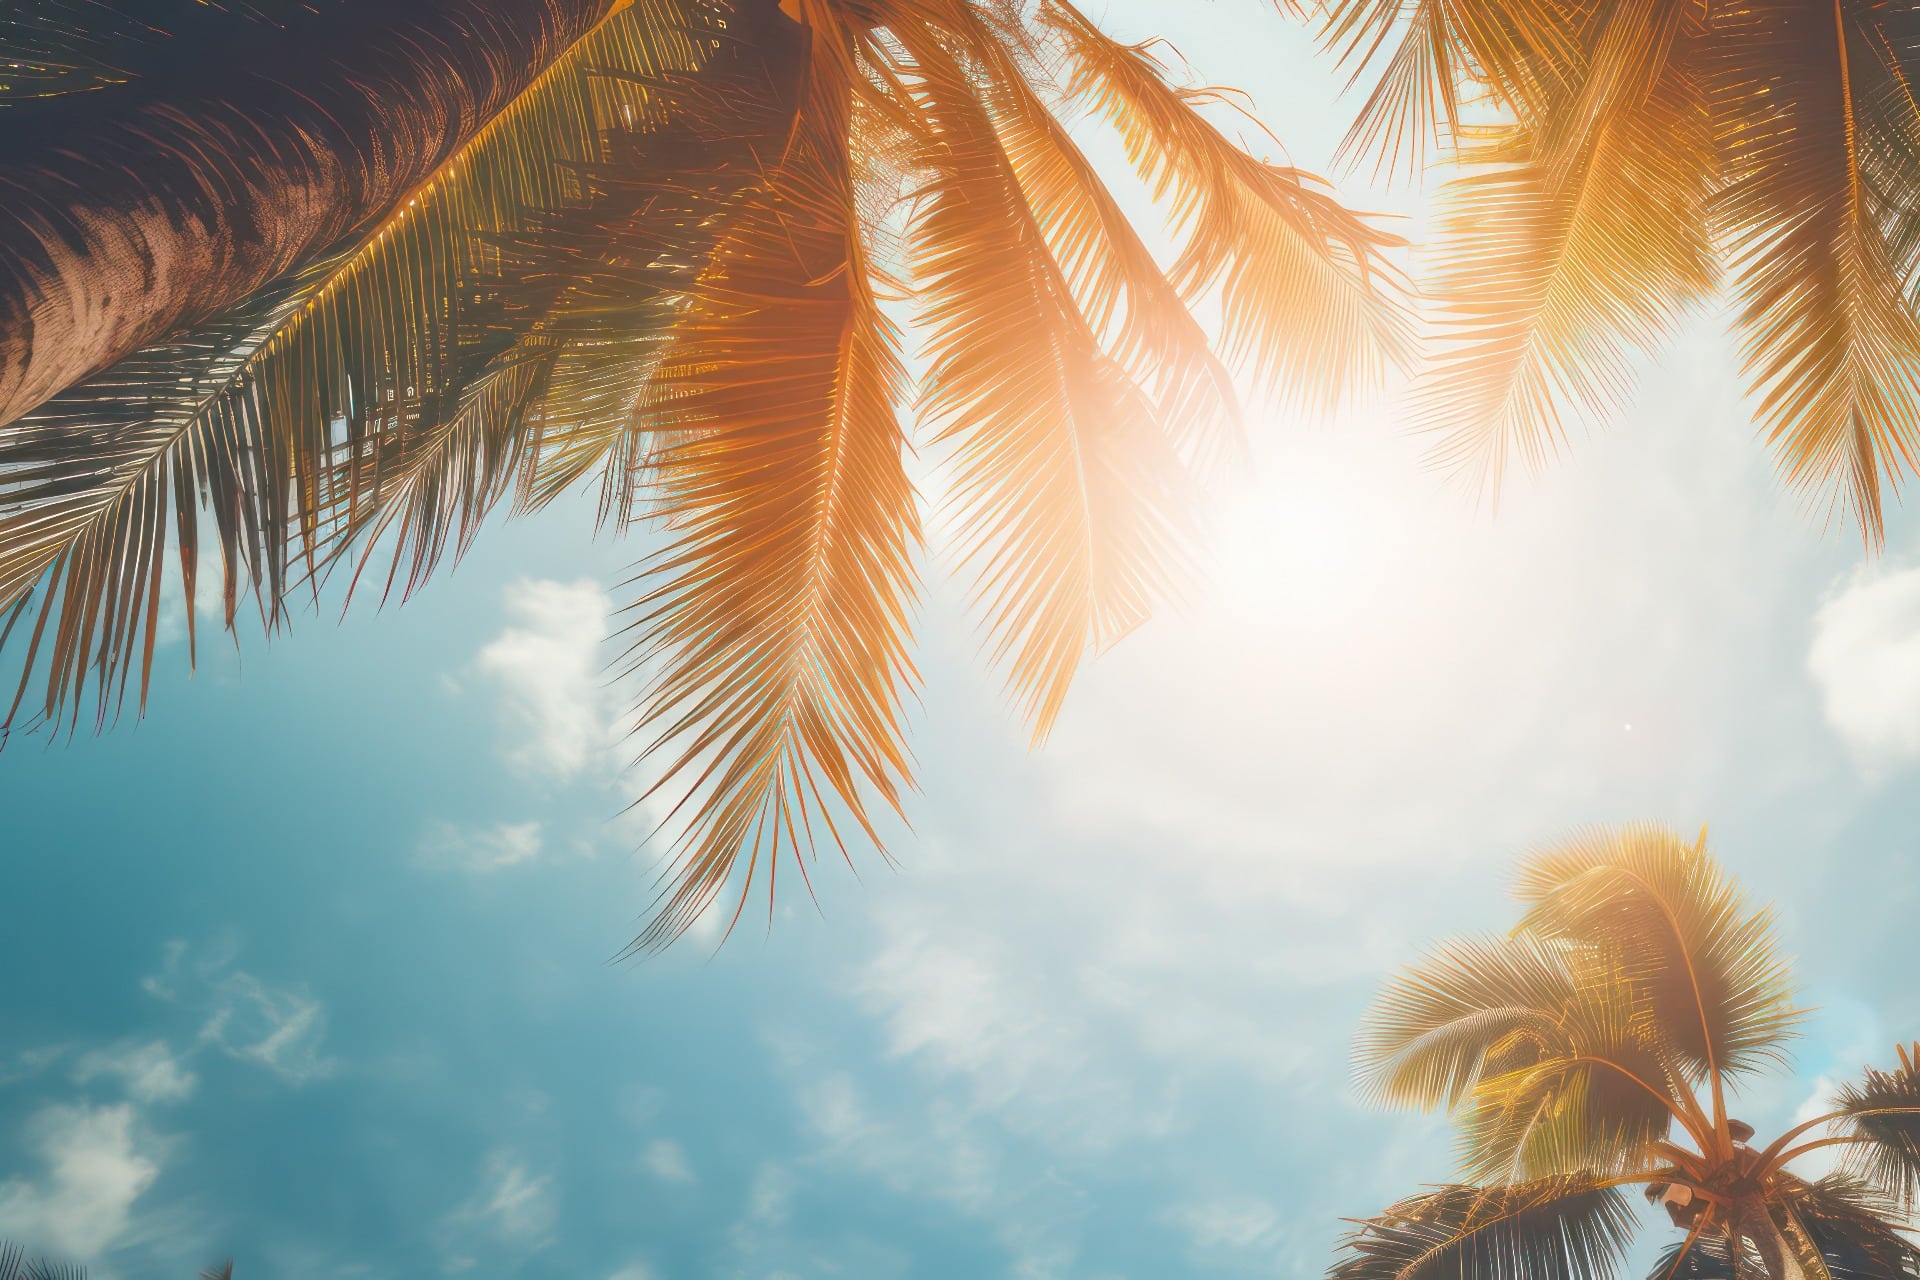 Mit Blick auf den blauen Himmel und die Palmen, mit einem Hauch von Vintage, der einen tropischen Strand und einen sommerlichen Hintergrund mit schimmerndem Sonnenlicht schafft und einen unscharfen Effekt erzeugt